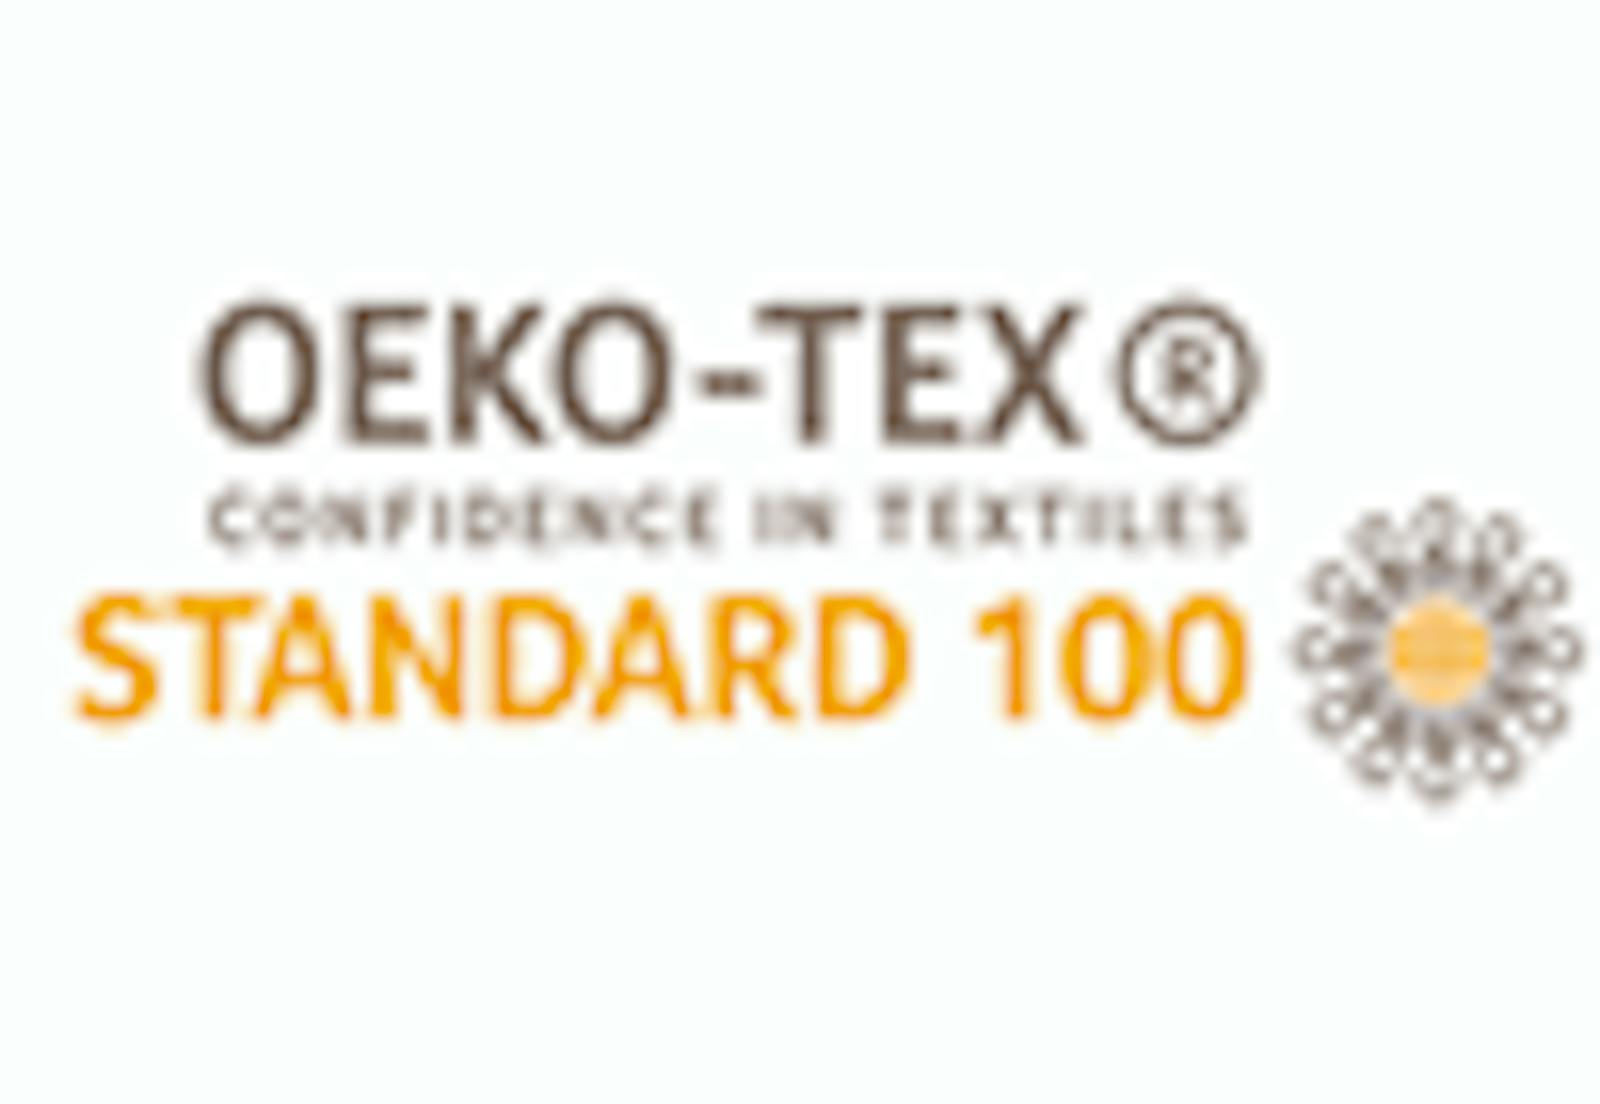 OEKO-TEX certification